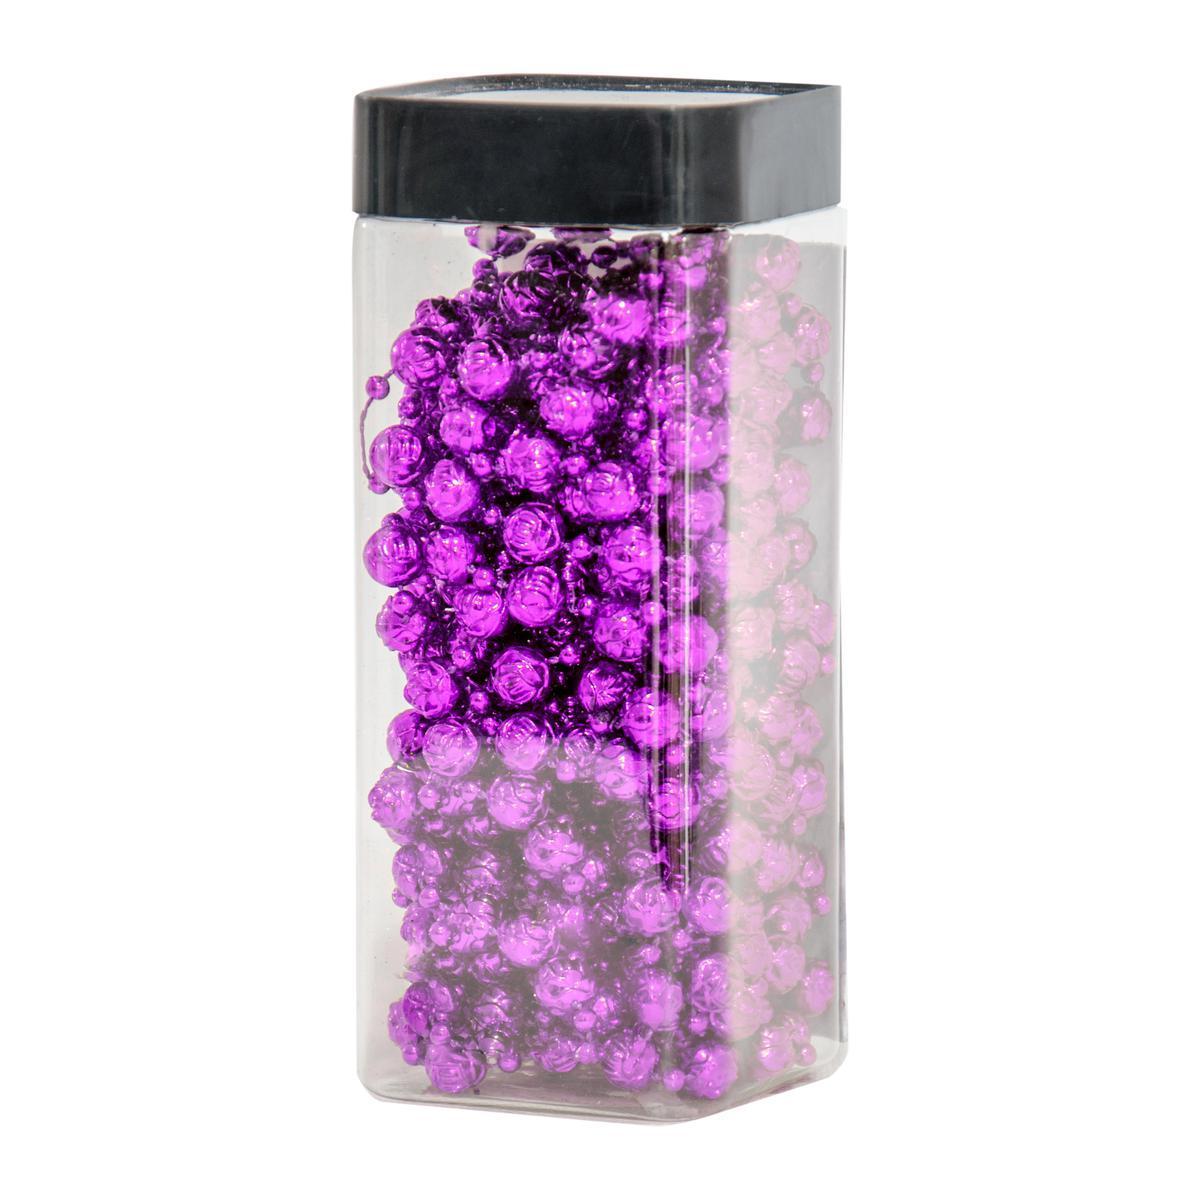 Guirlande fleurs - Acrylique - 6,5 x 6,5 x H 16 cm - Violet